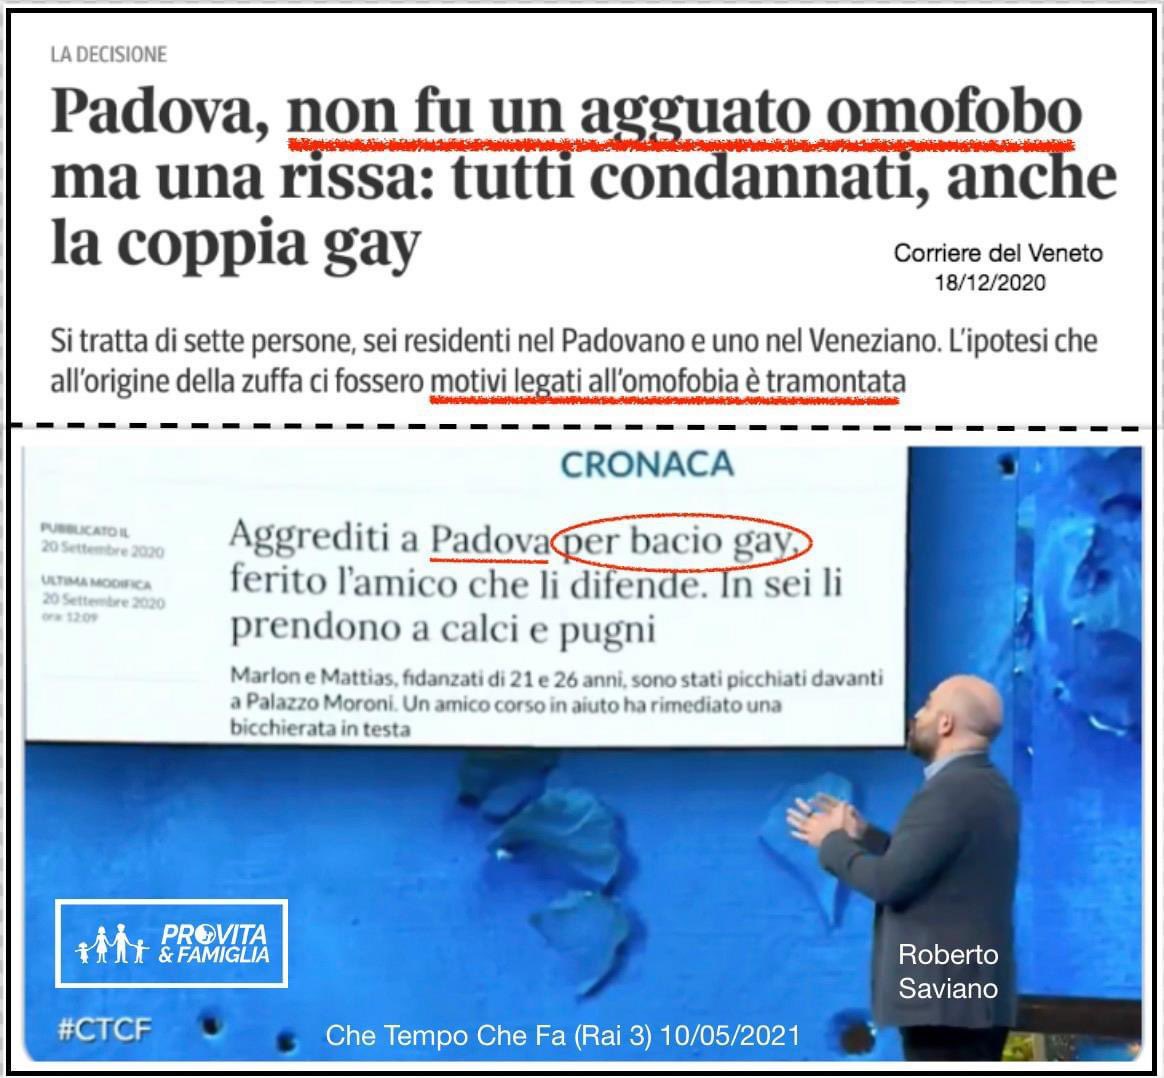 Il nientologo @robertosaviano ha abusato di quello che dovrebbe essere un servizio pubblico per diffondere #FakeNews sull’#omofobia. A Padova, “non fu un agguato omofobo” e pure la coppia gay è stata condannata. @chetempochefa @RaiTre #DDLZan